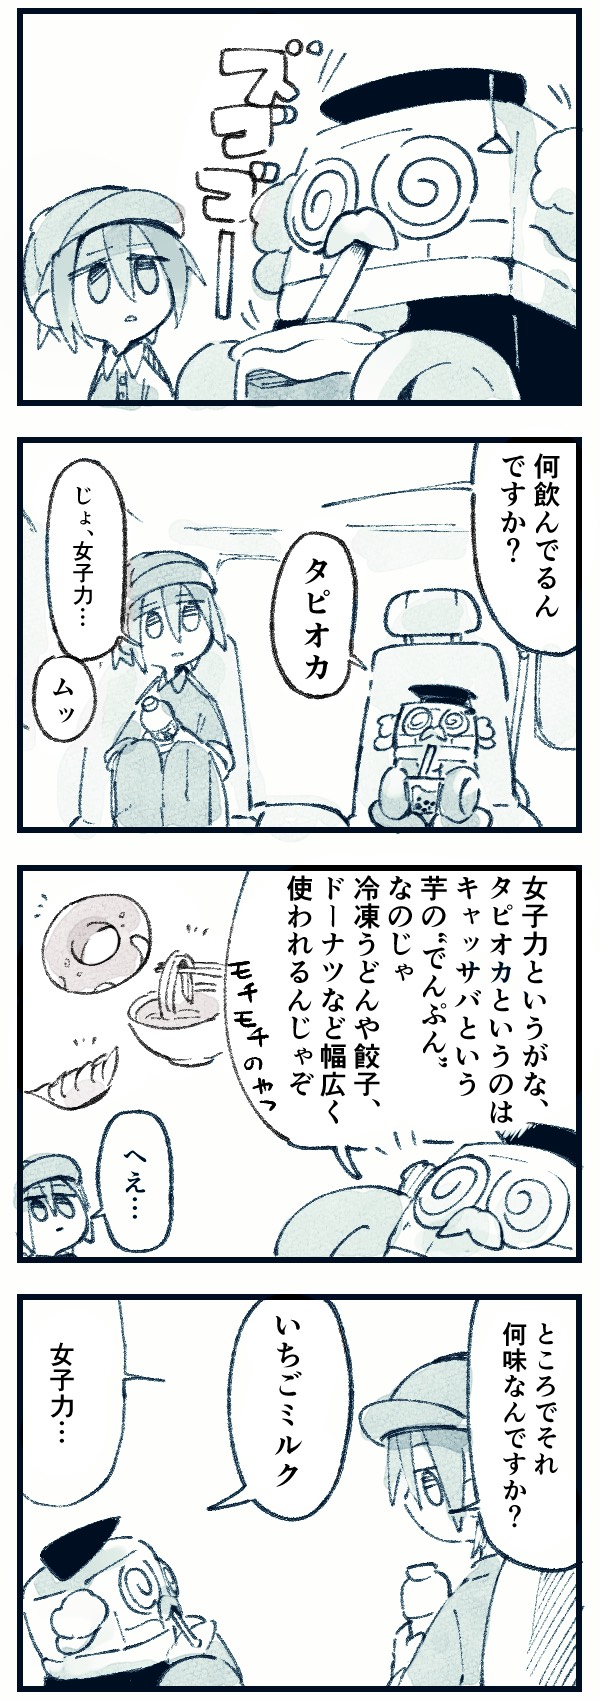 【ドラ博士 4コマ漫画#10】女子力！